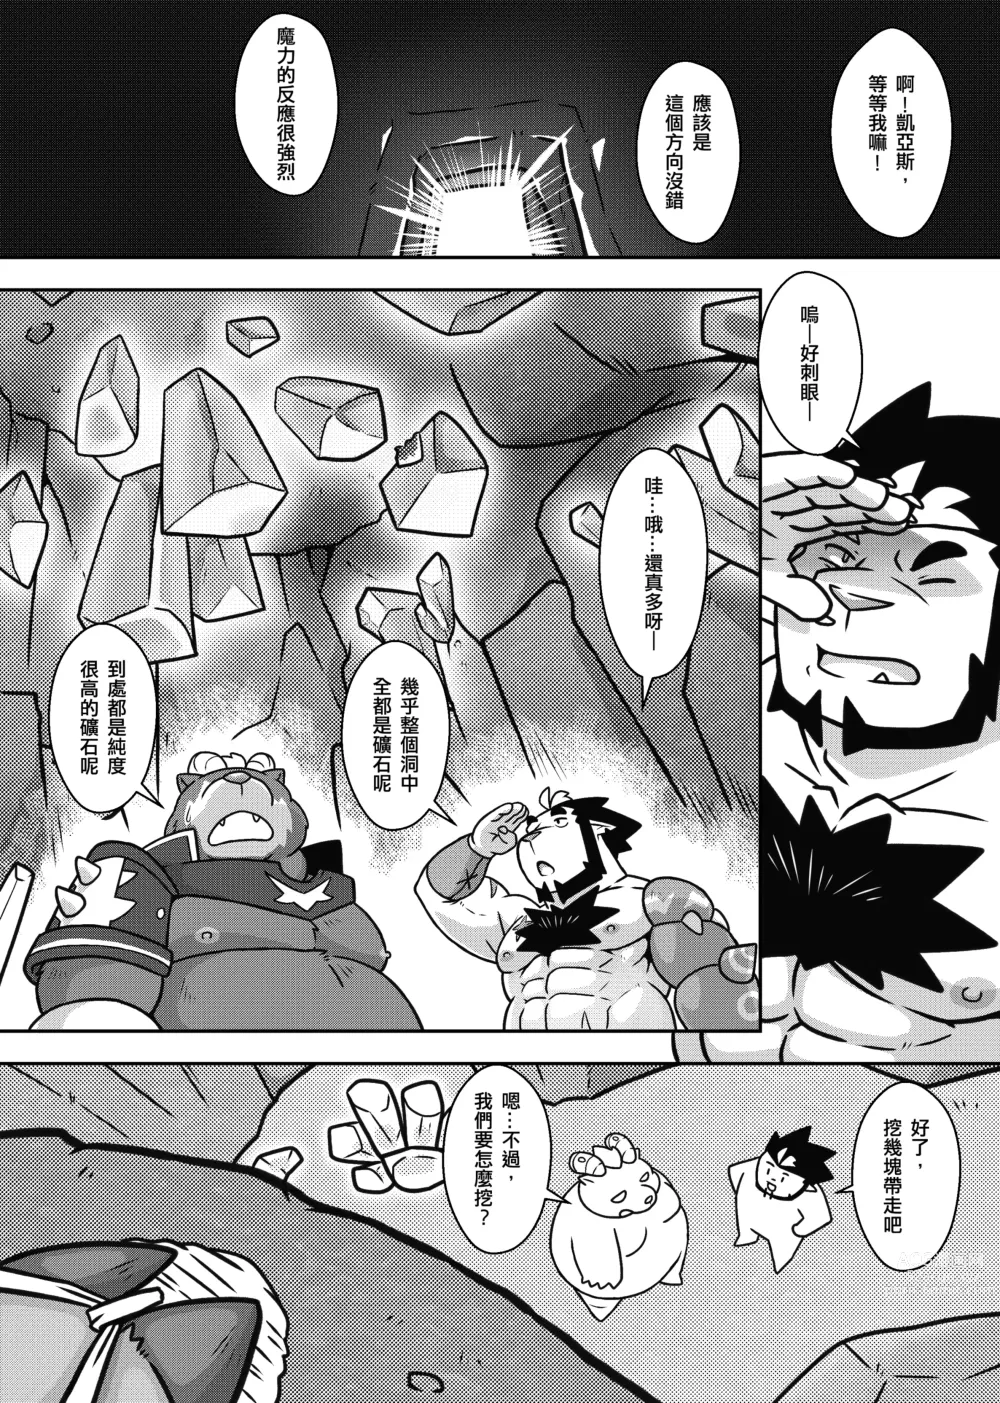 Page 13 of doujinshi 勇者的大小只有魔王塞得下2